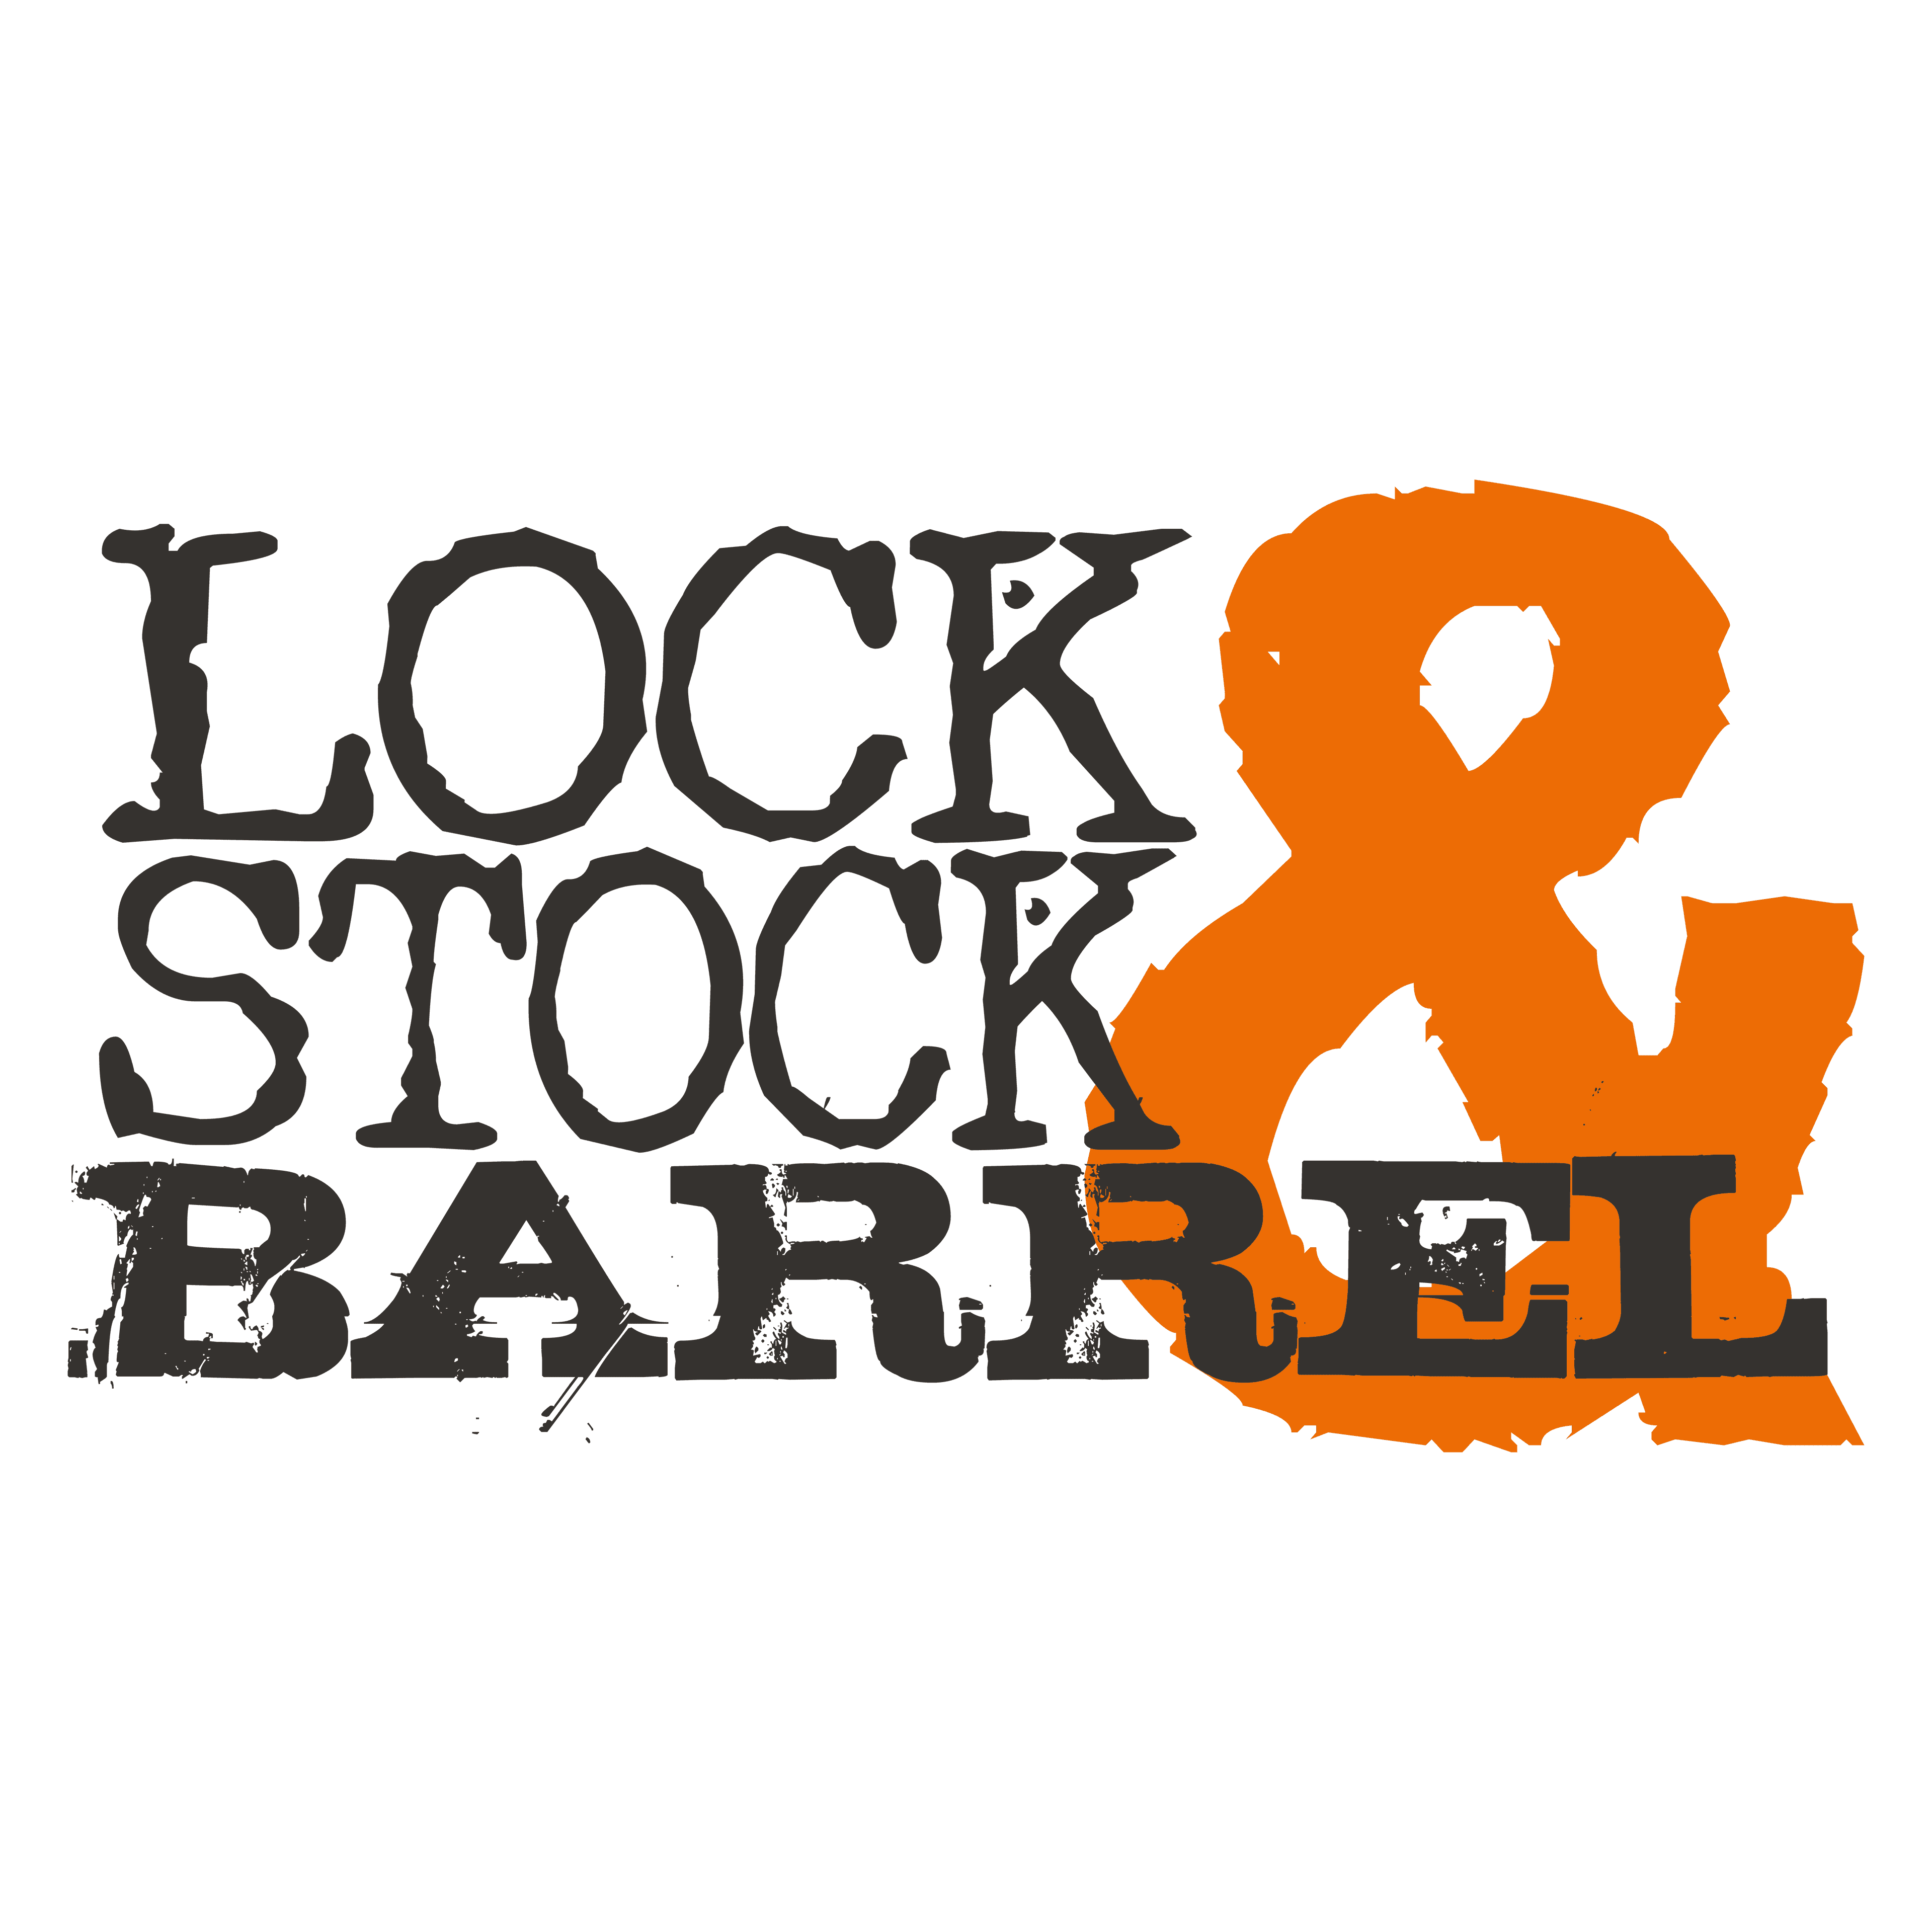 Lock, Stock & Taco